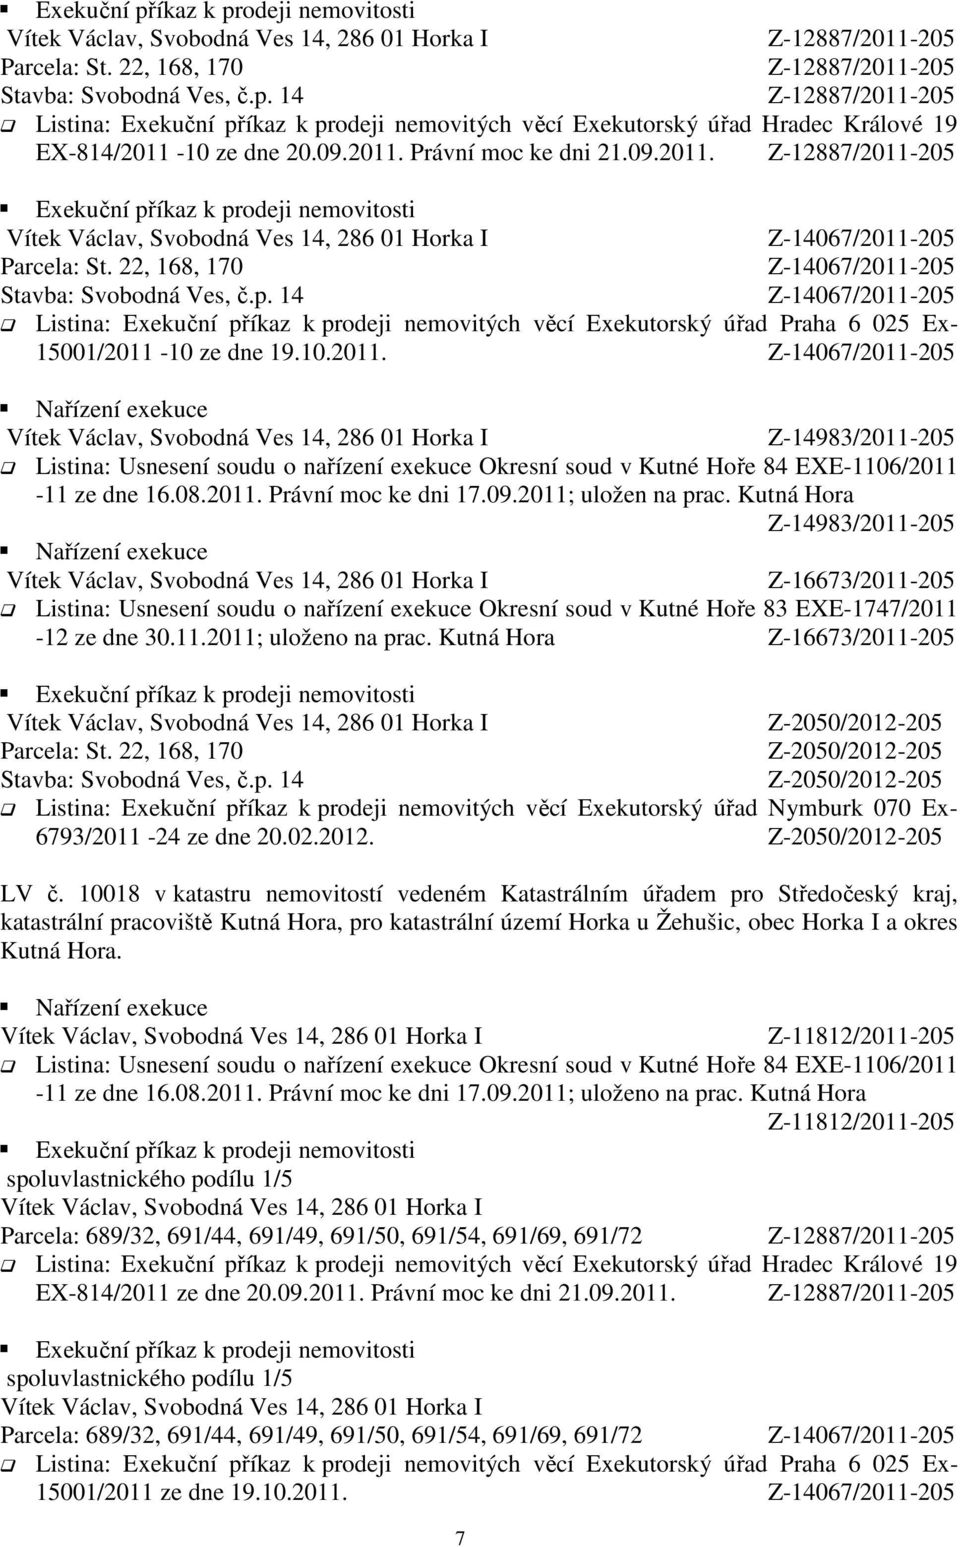 Kutná Hora Z-16673/2011-205 Listina: Usnesení soudu o nařízení exekuce Okresní soud v Kutné Hoře 83 EXE-1747/2011-12 ze dne 30.11.2011; uloženo na prac.